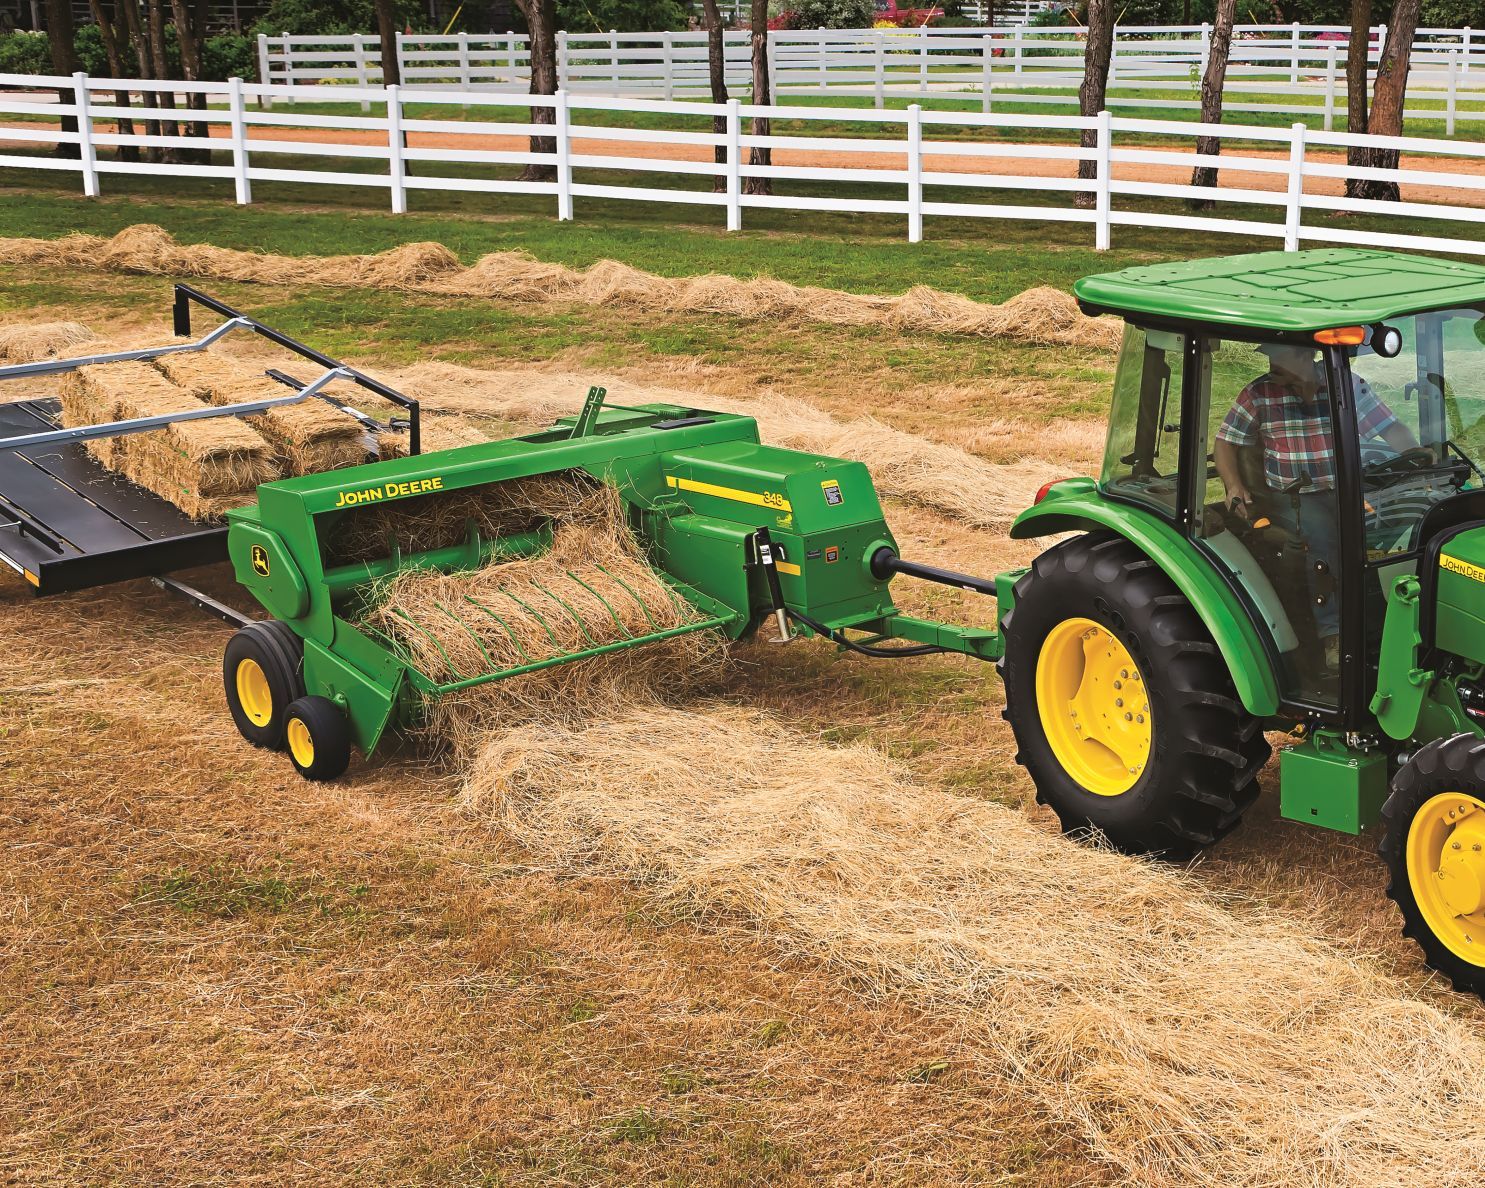 John Deere tractor pulls a 348 small hay baler through a field